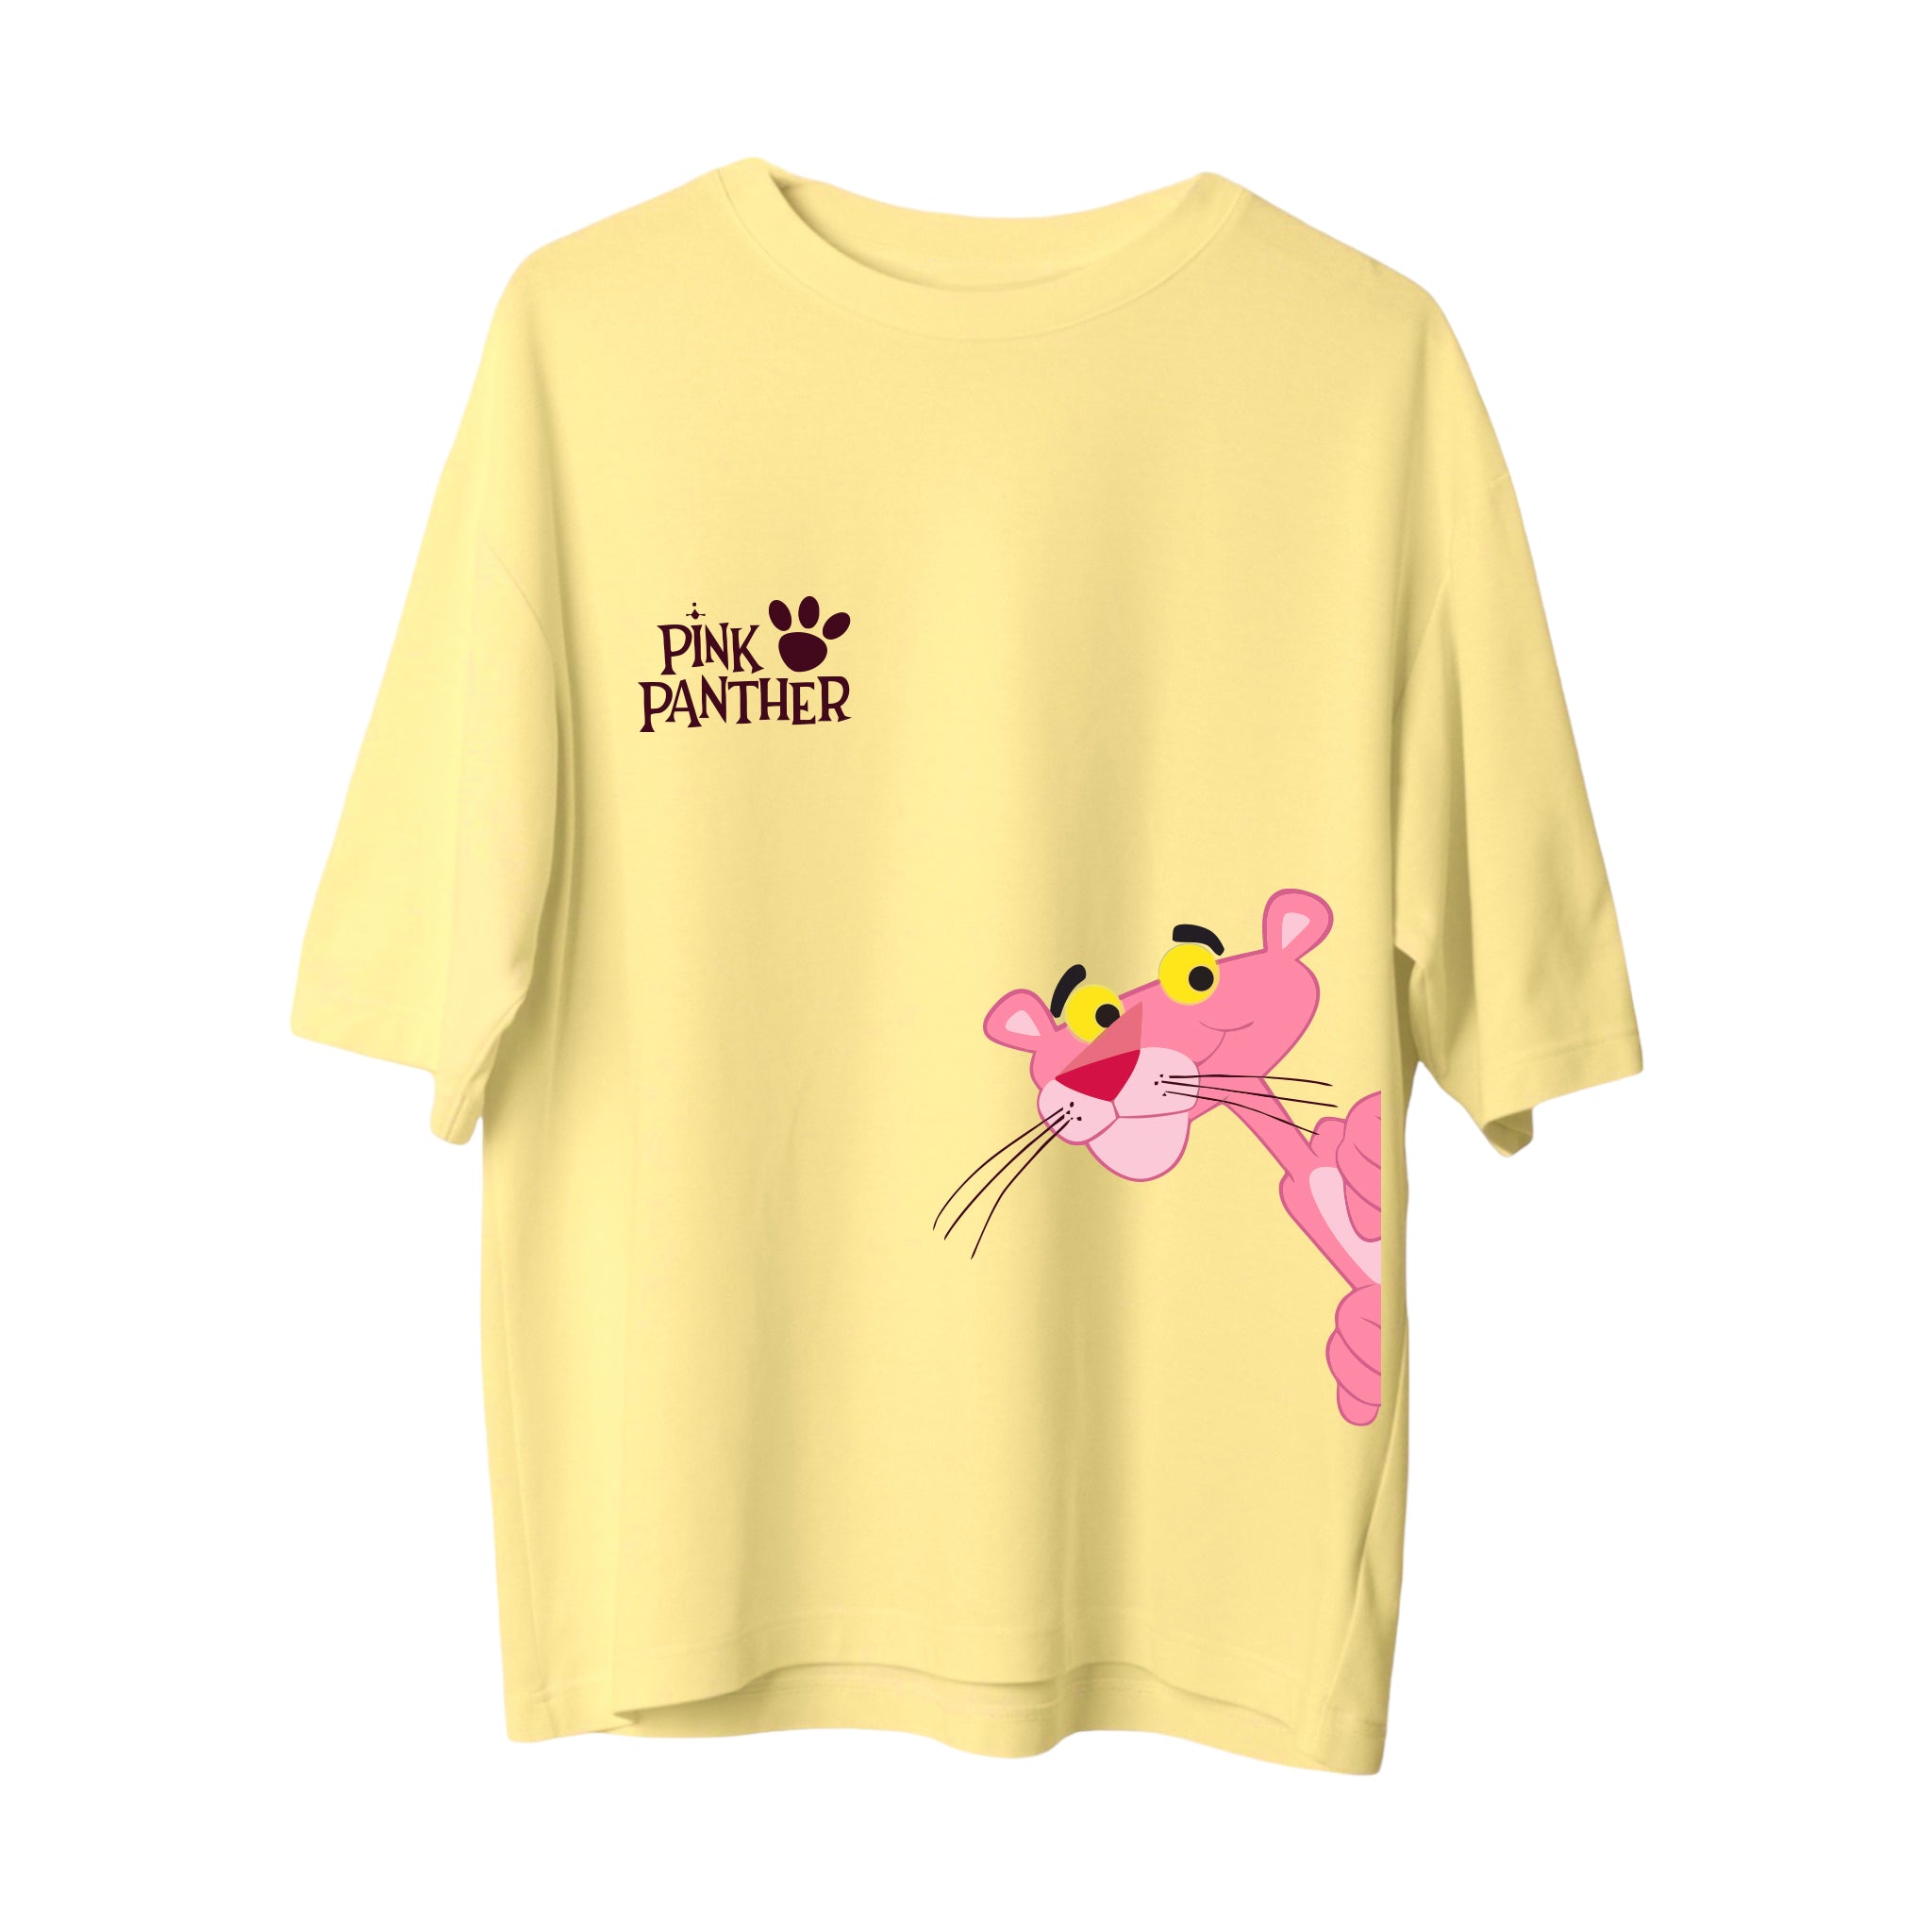 Pink Panther - Oversize T-Shirt